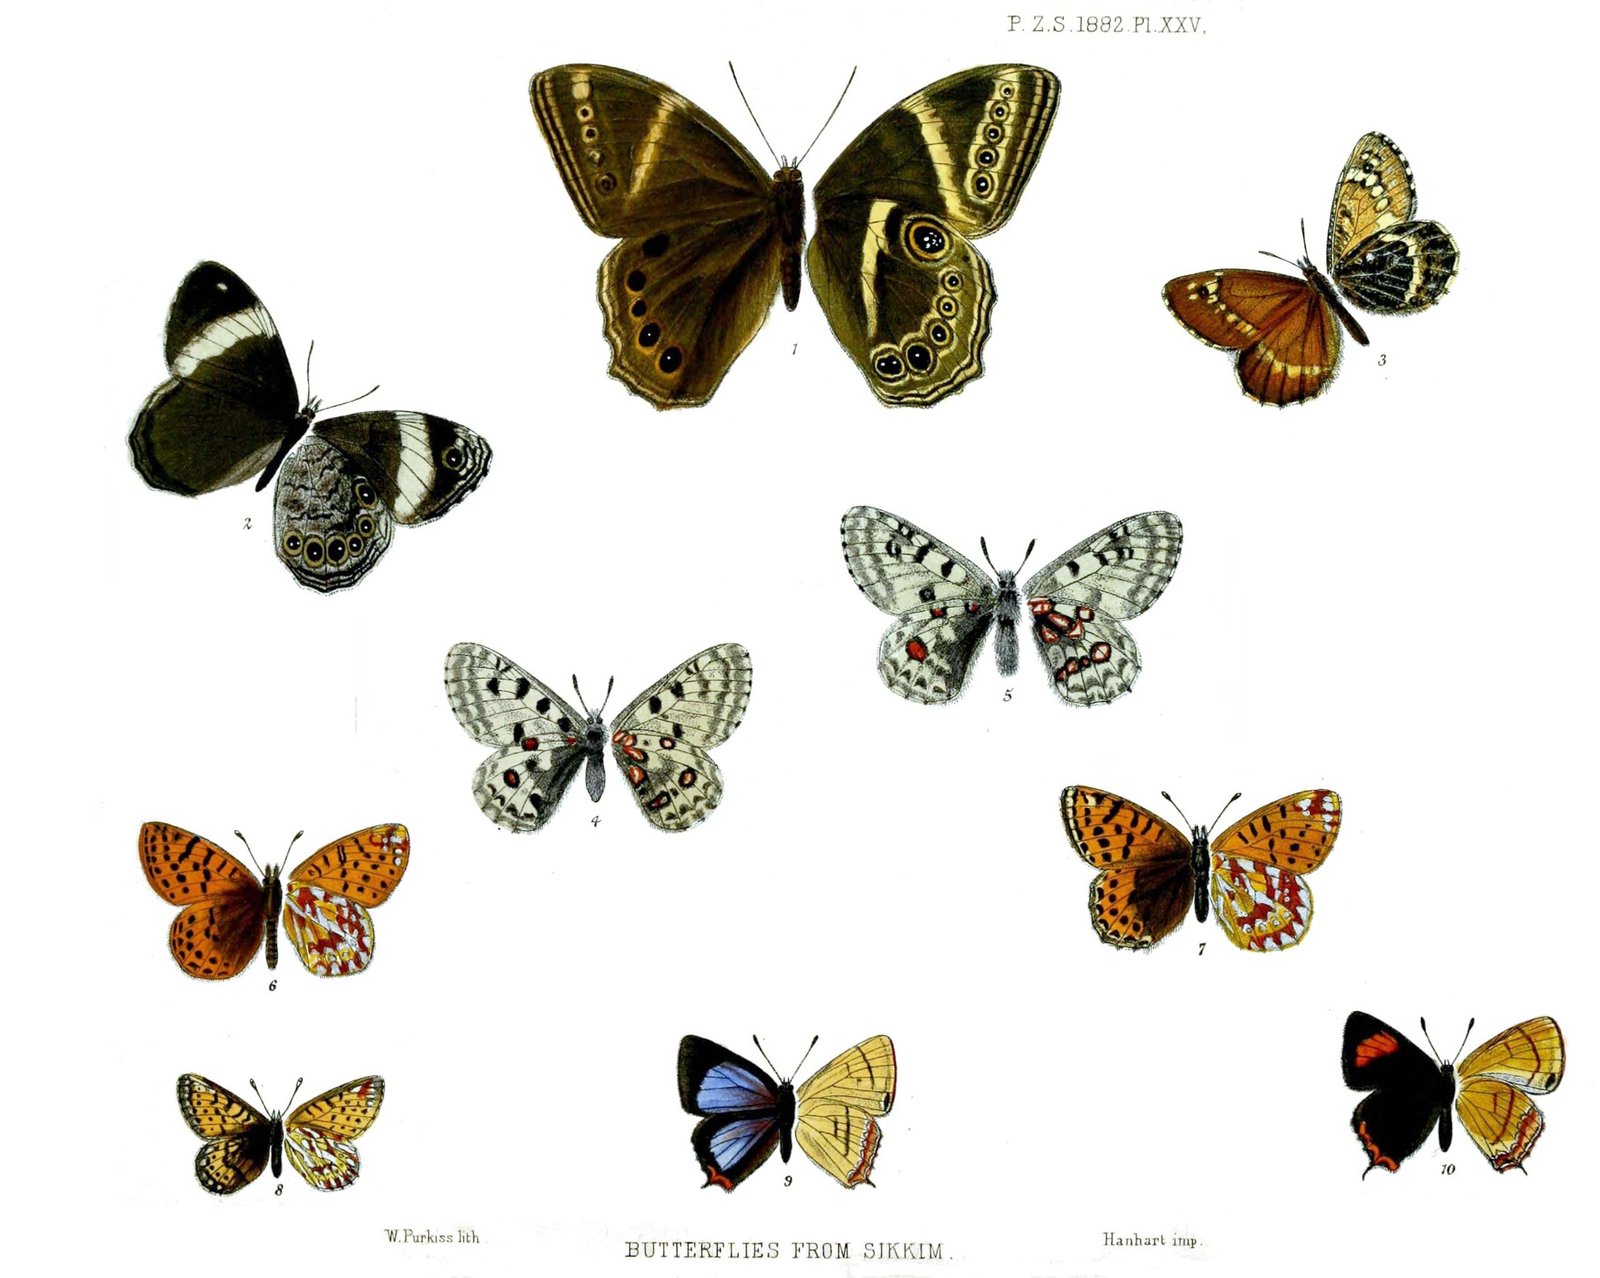 Butterflies from Sikkim Plate